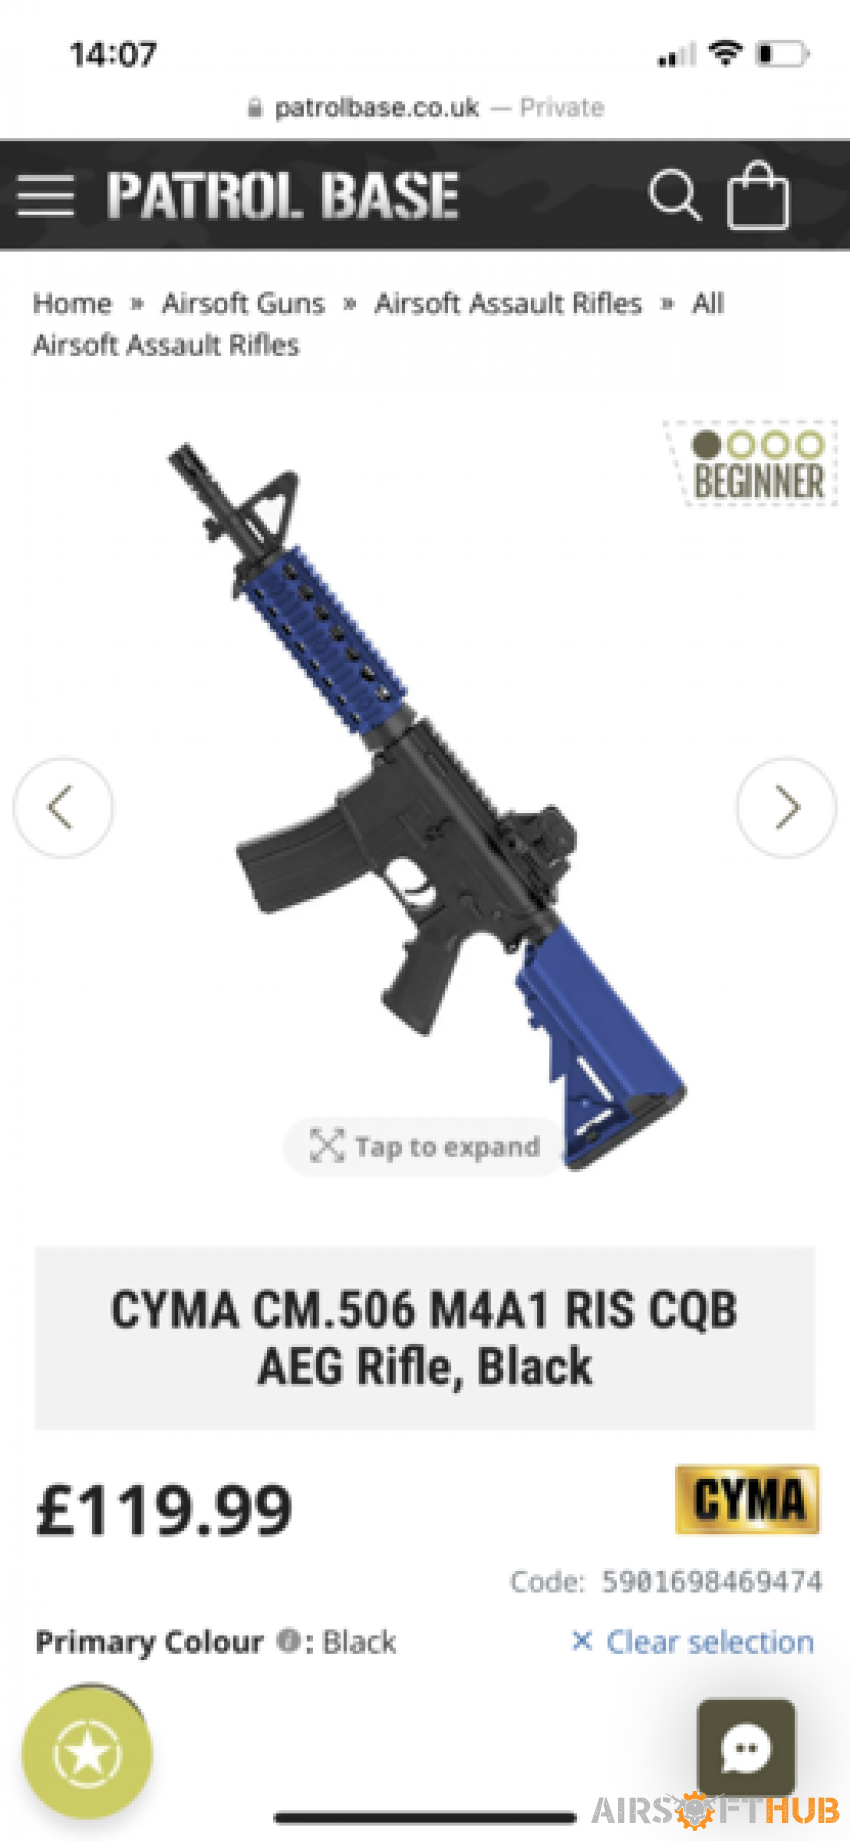 CYMA CM.506 M4A1 RIS CQB AEG - Used airsoft equipment